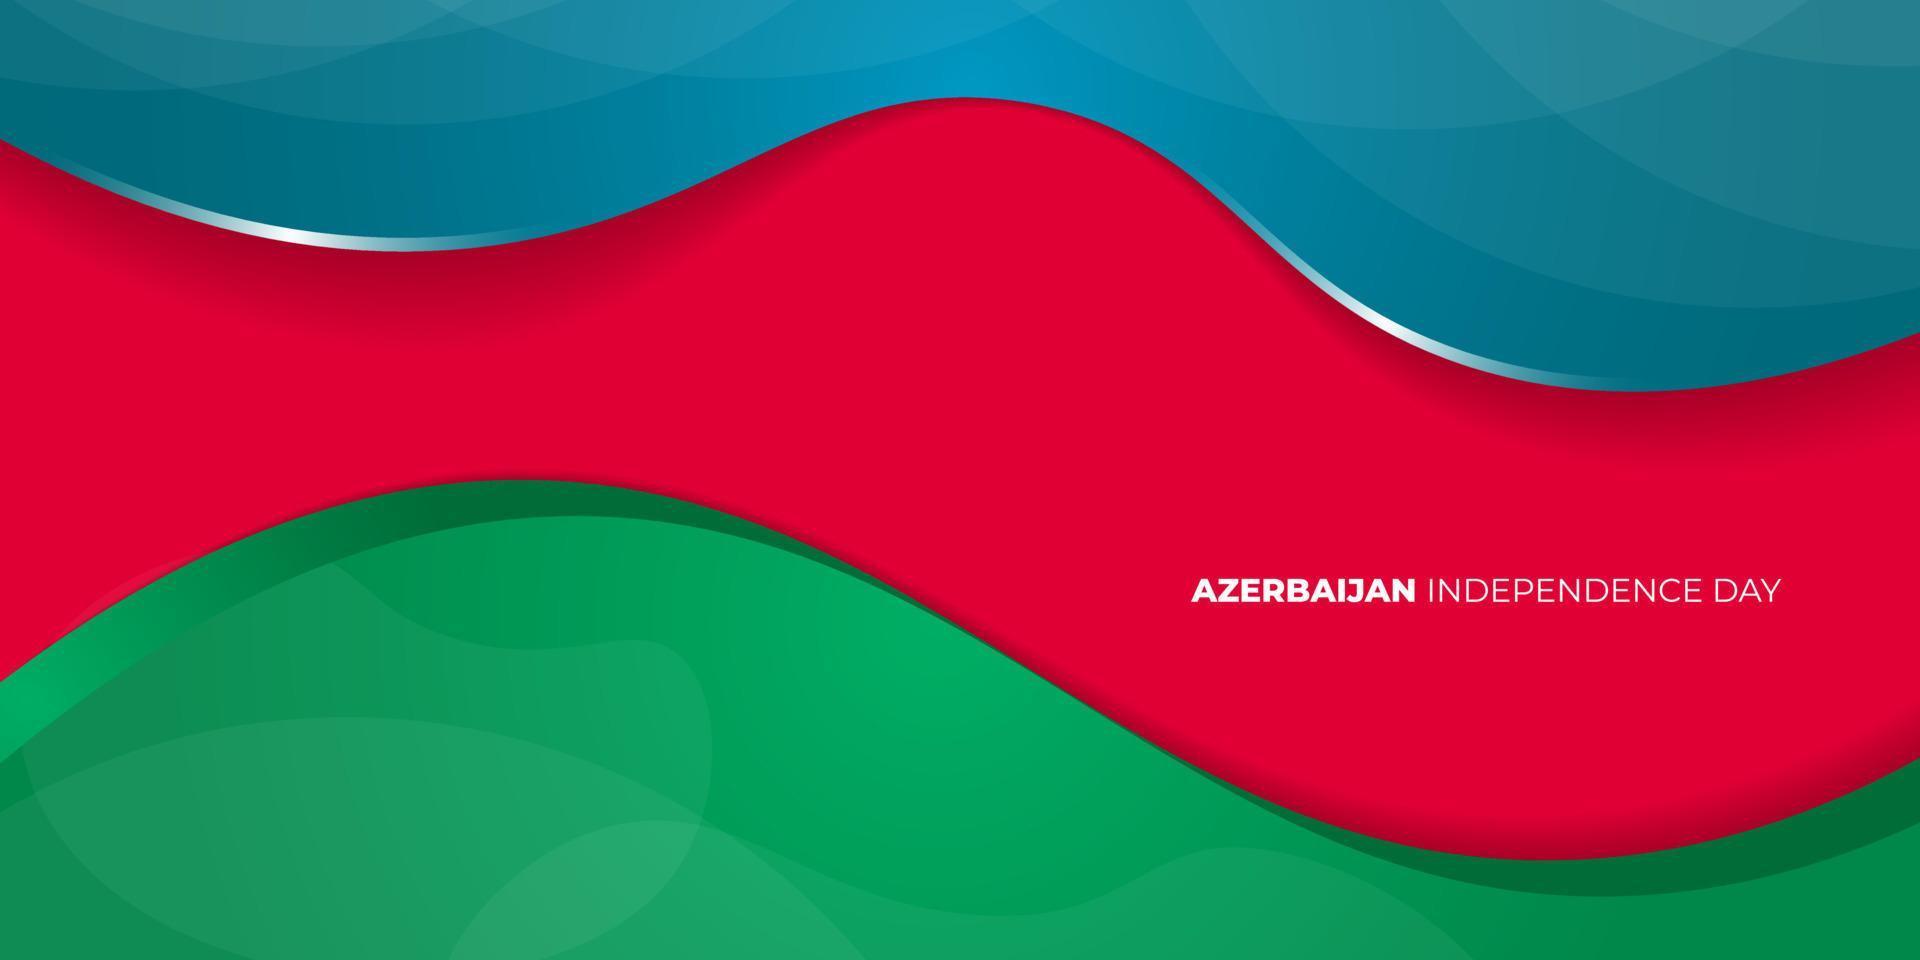 blå, röd och grön abstrakt bakgrundsdesign. Azerbajdzjans självständighetsdag. vektor